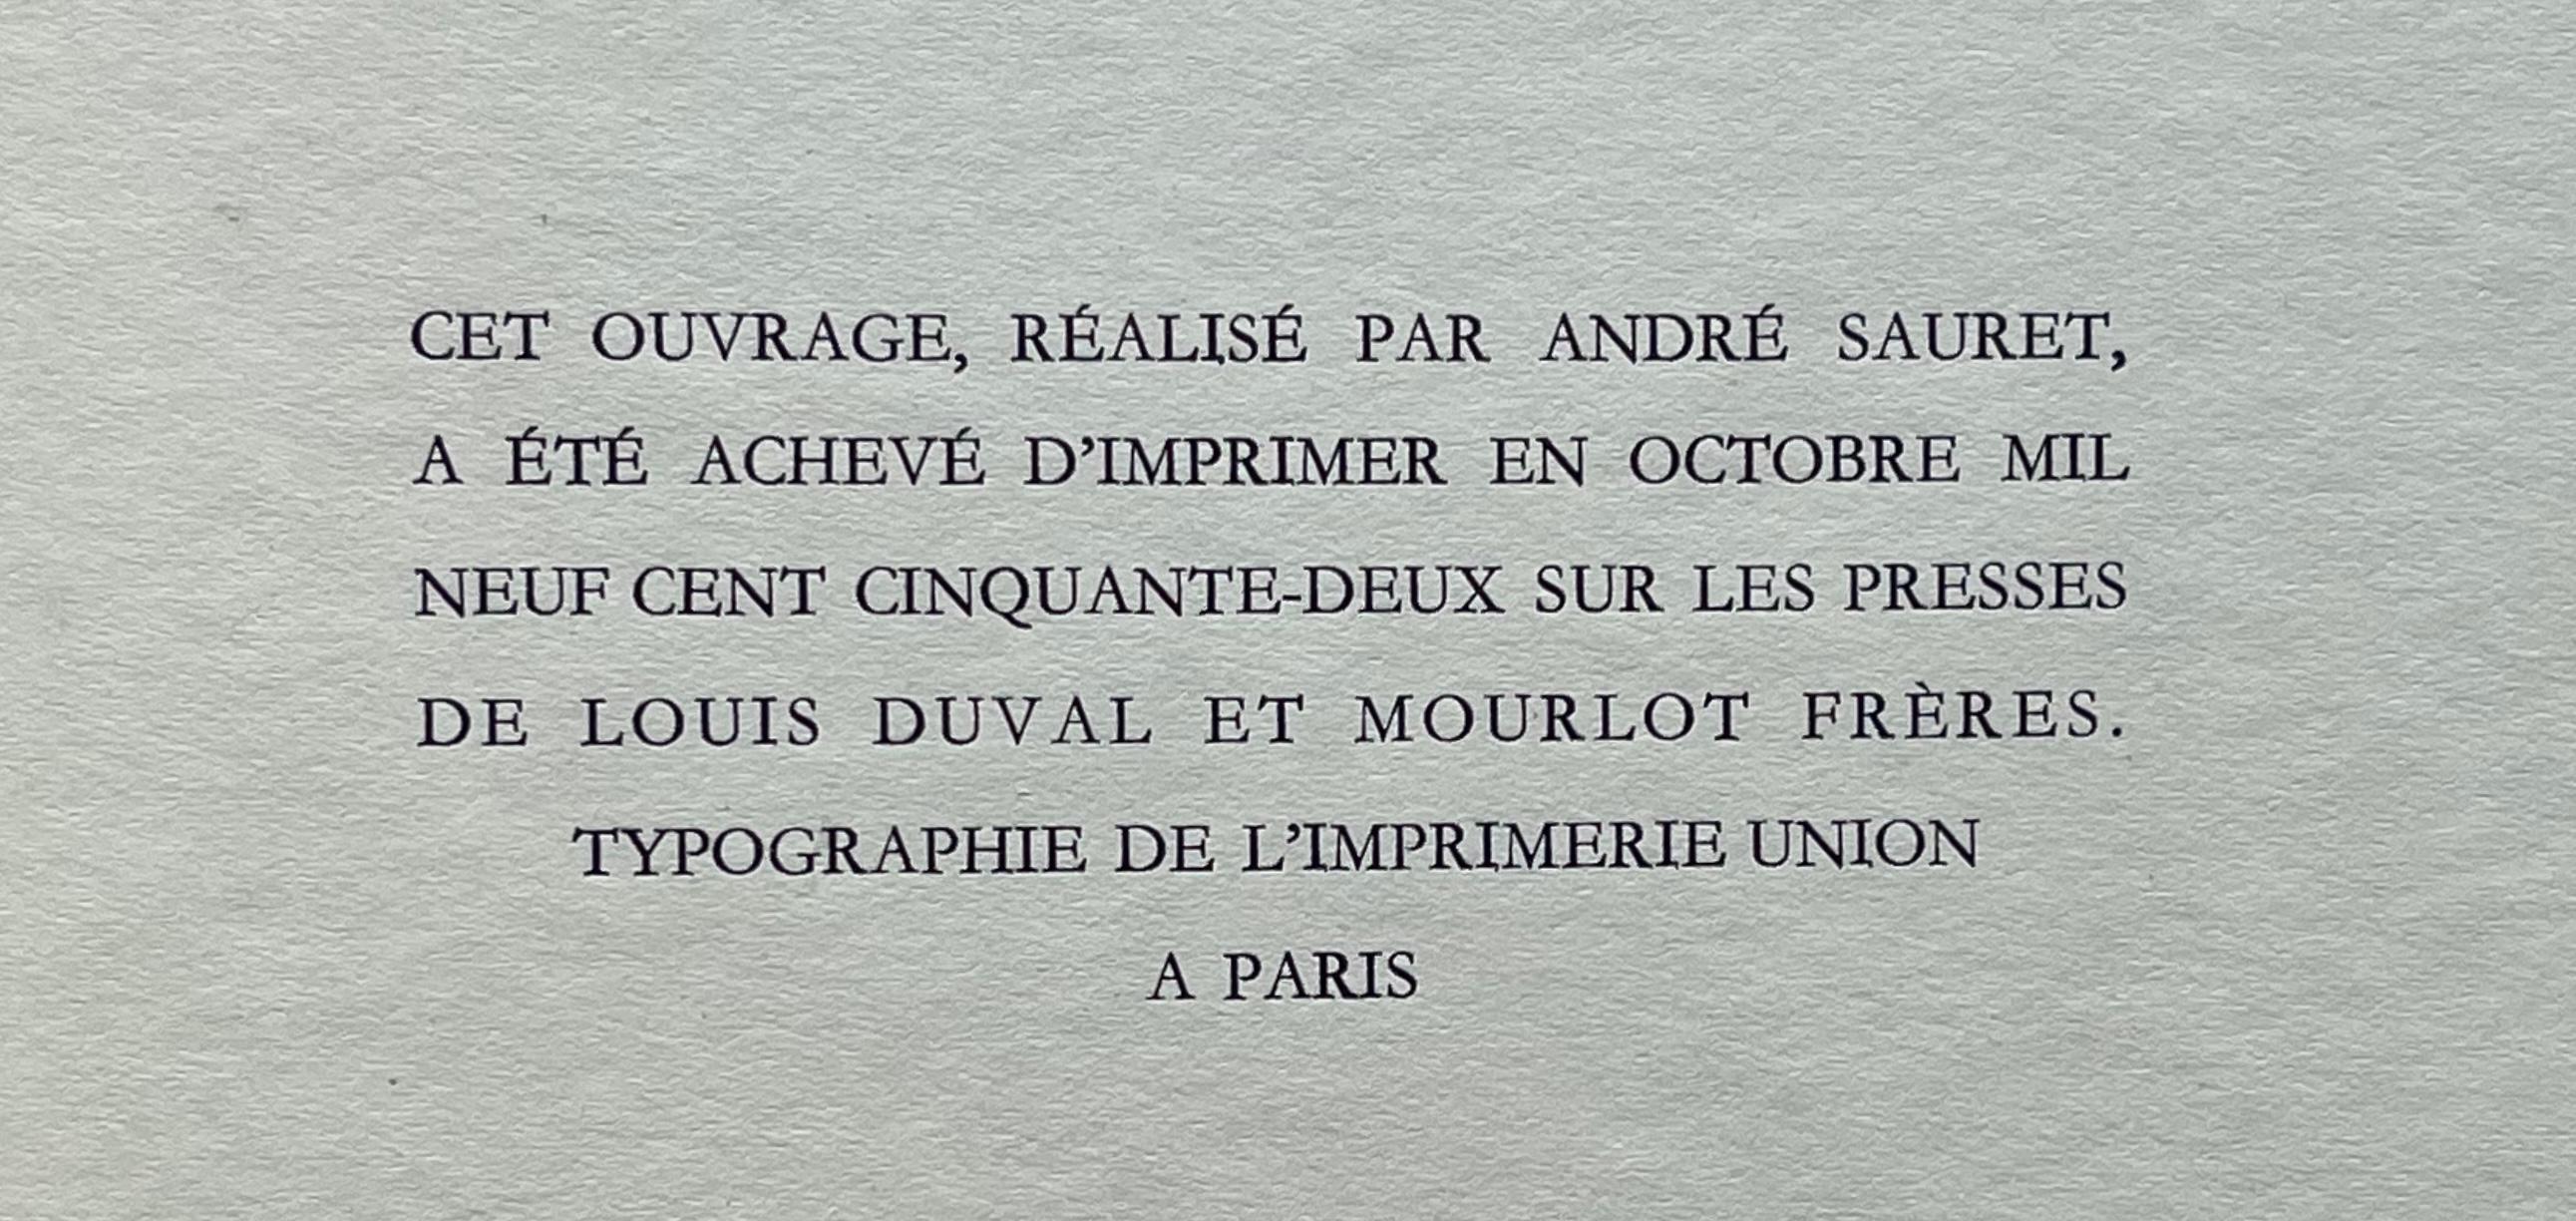 Toulouse-Lautrec, Dans les coulisses, The Circus by Toulouse-Lautrec (after) For Sale 6